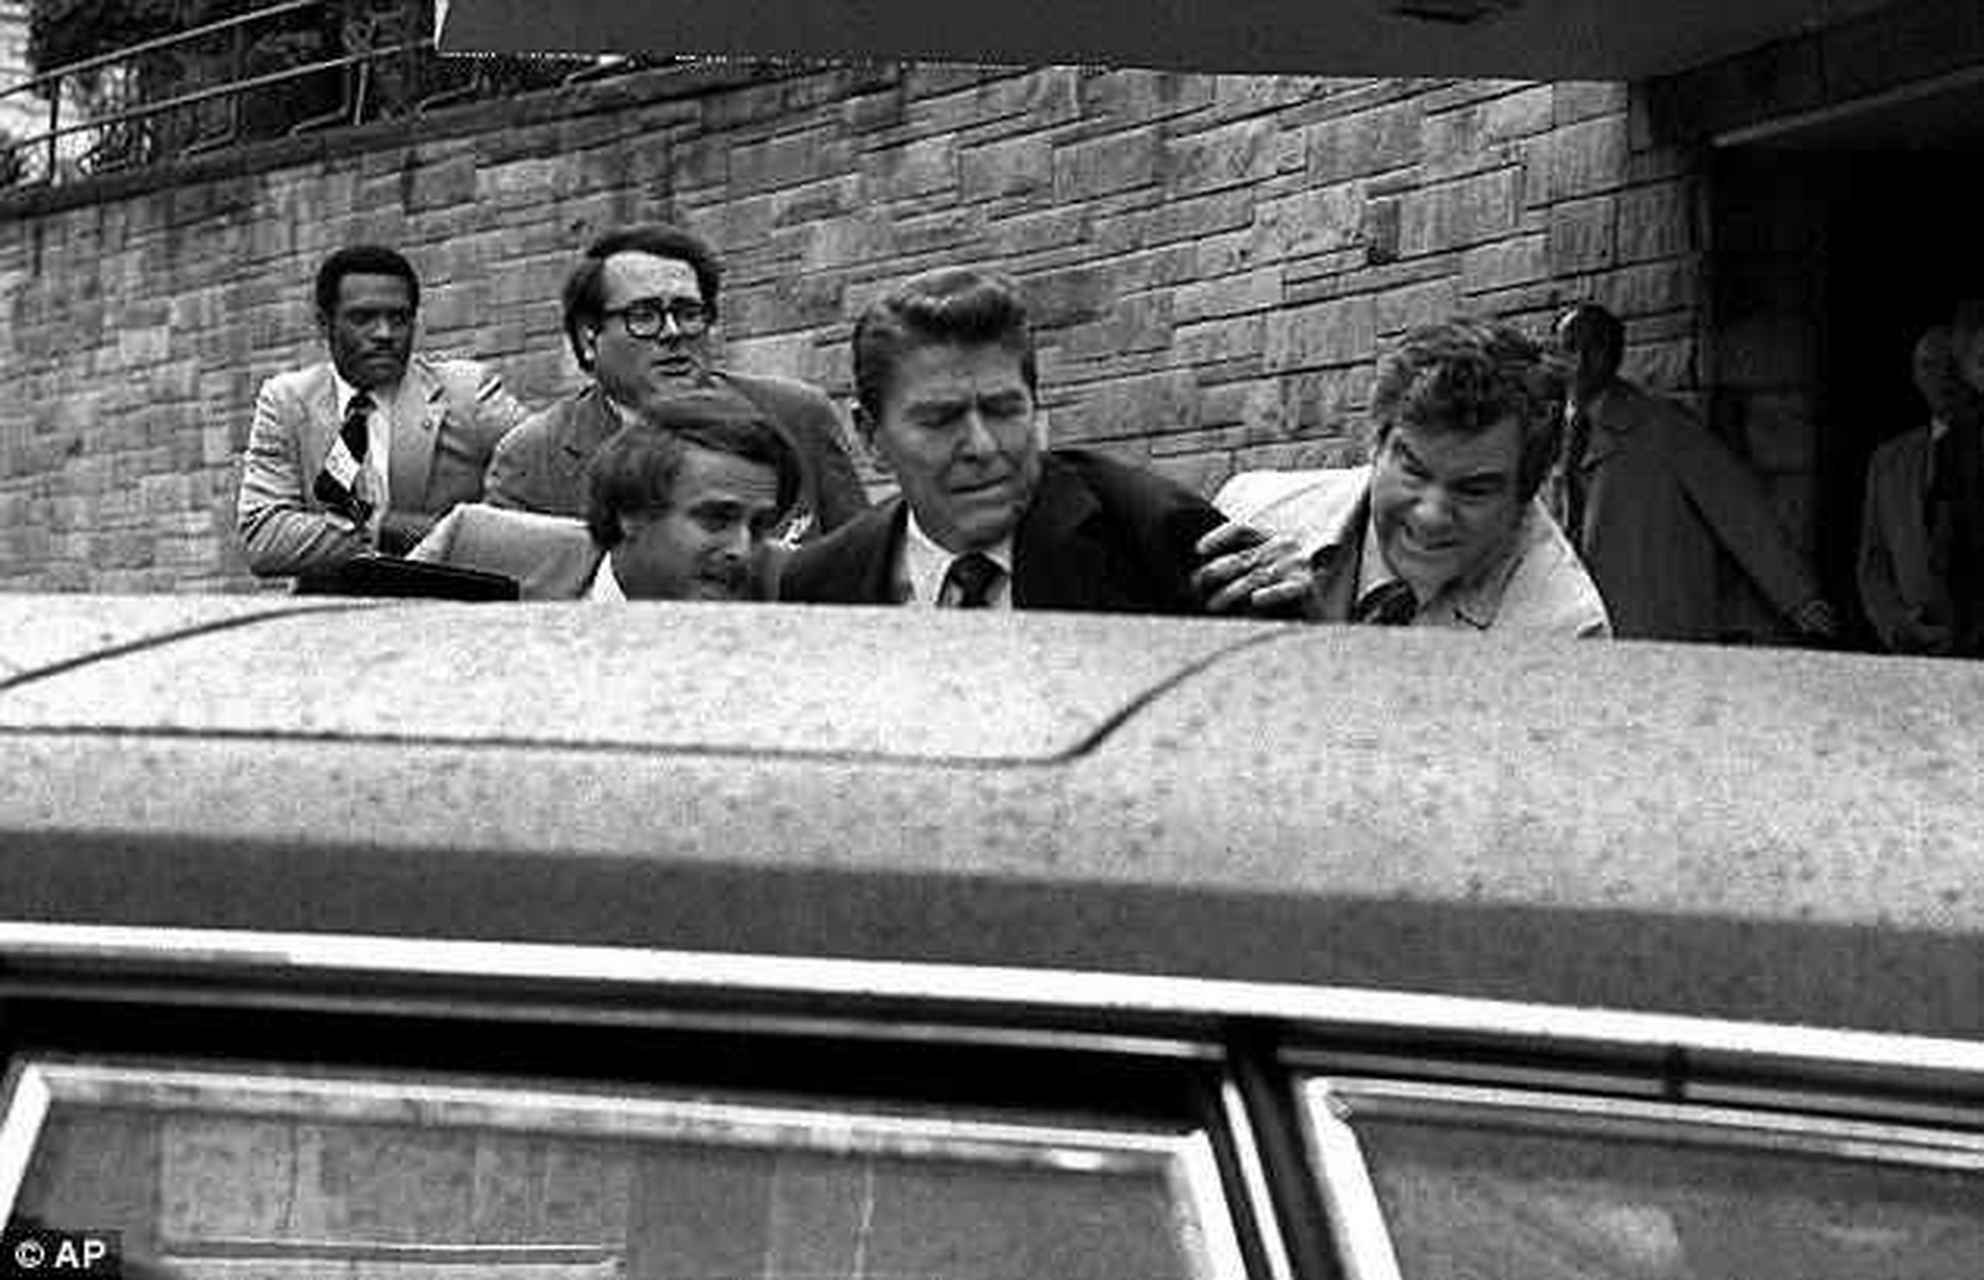 历史佳# 1981年3月30日,时任美国总统里根遇刺,他肺部中了一枪,造成